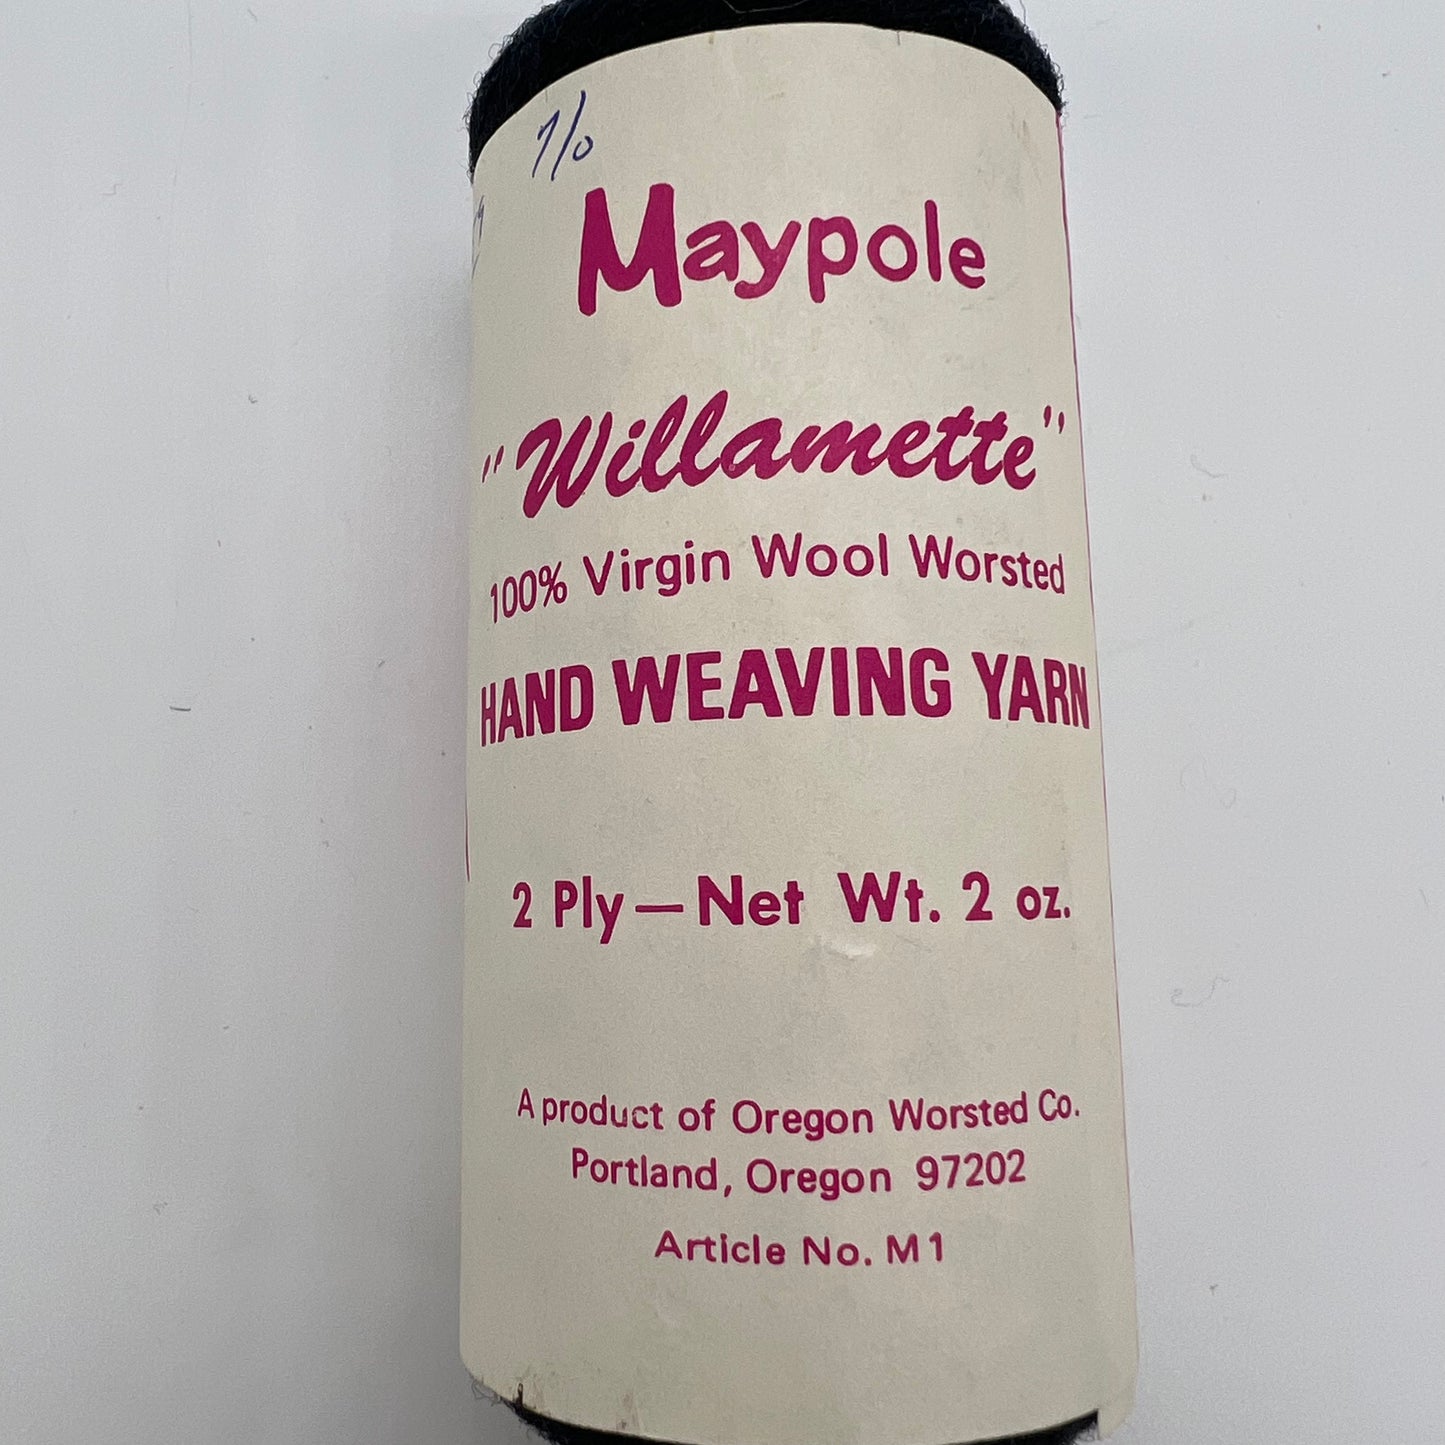 Maypole Willamette Black Yarn